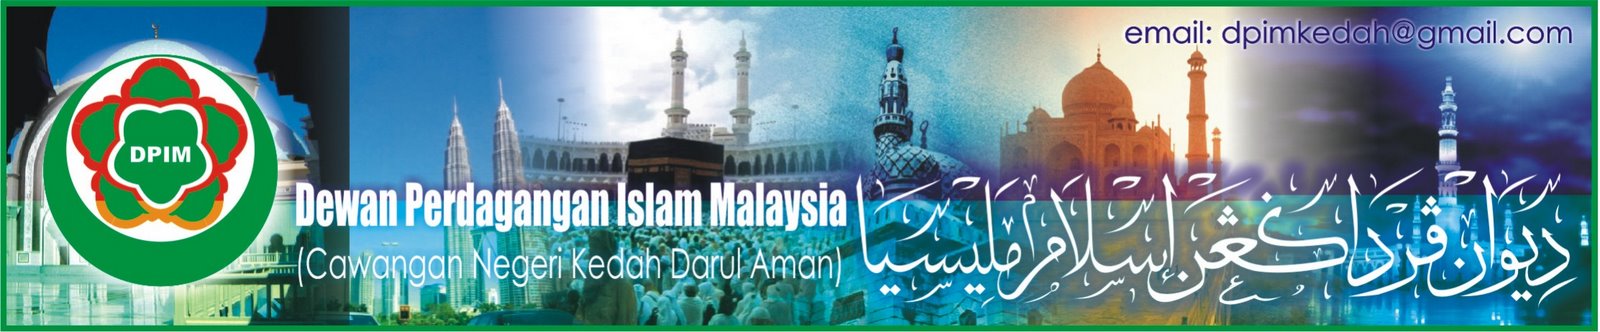 Dewan Perdagangan Islam Malaysia (DPIM) Kedah